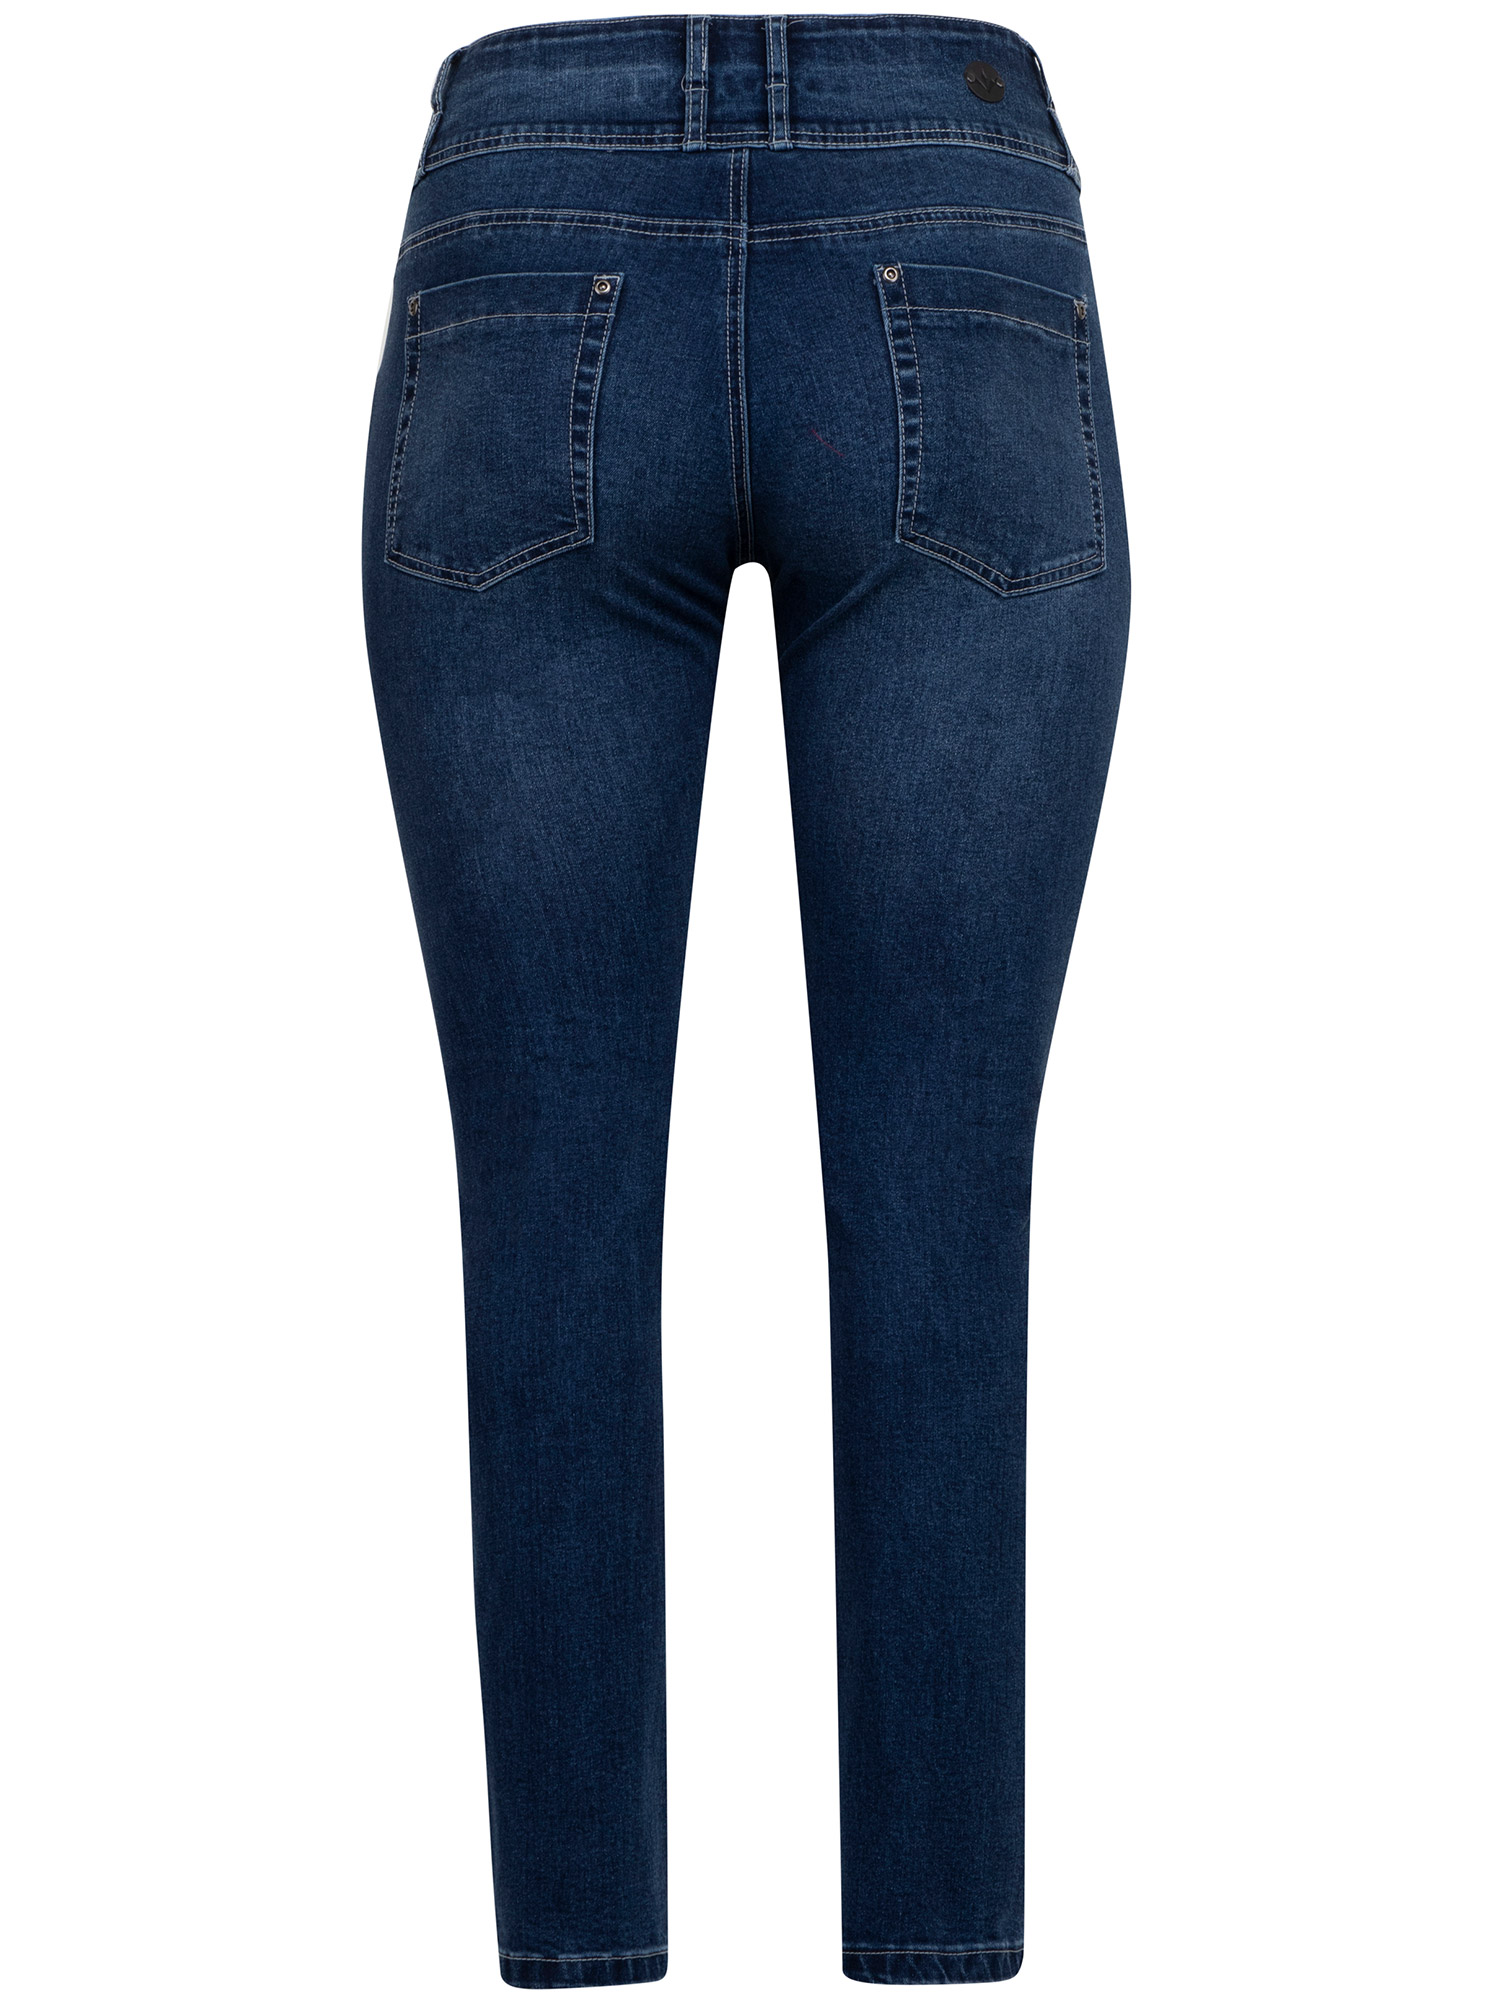 ROME - Blå jeans med stretch fra Adia